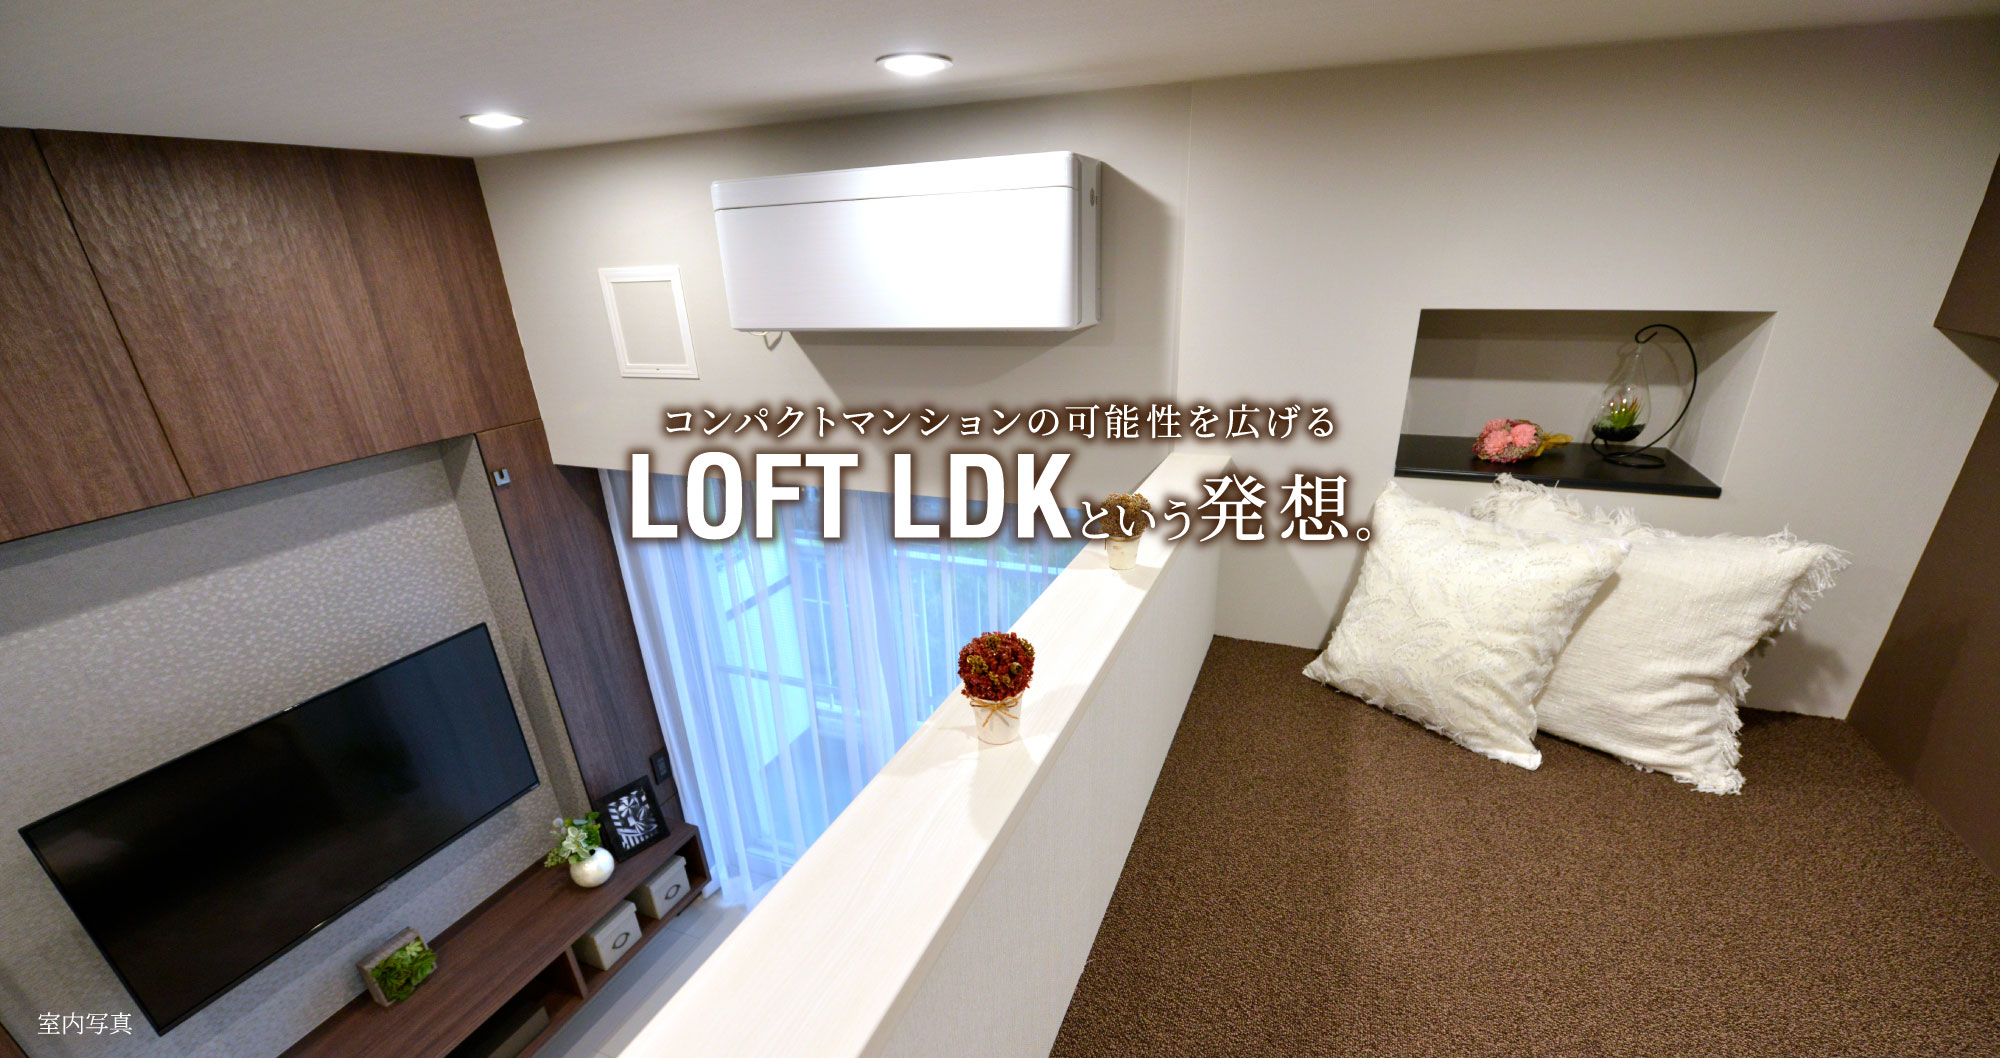 コンパクトマンションの可能性を広げるLOFT LDKという発想。イメージ02